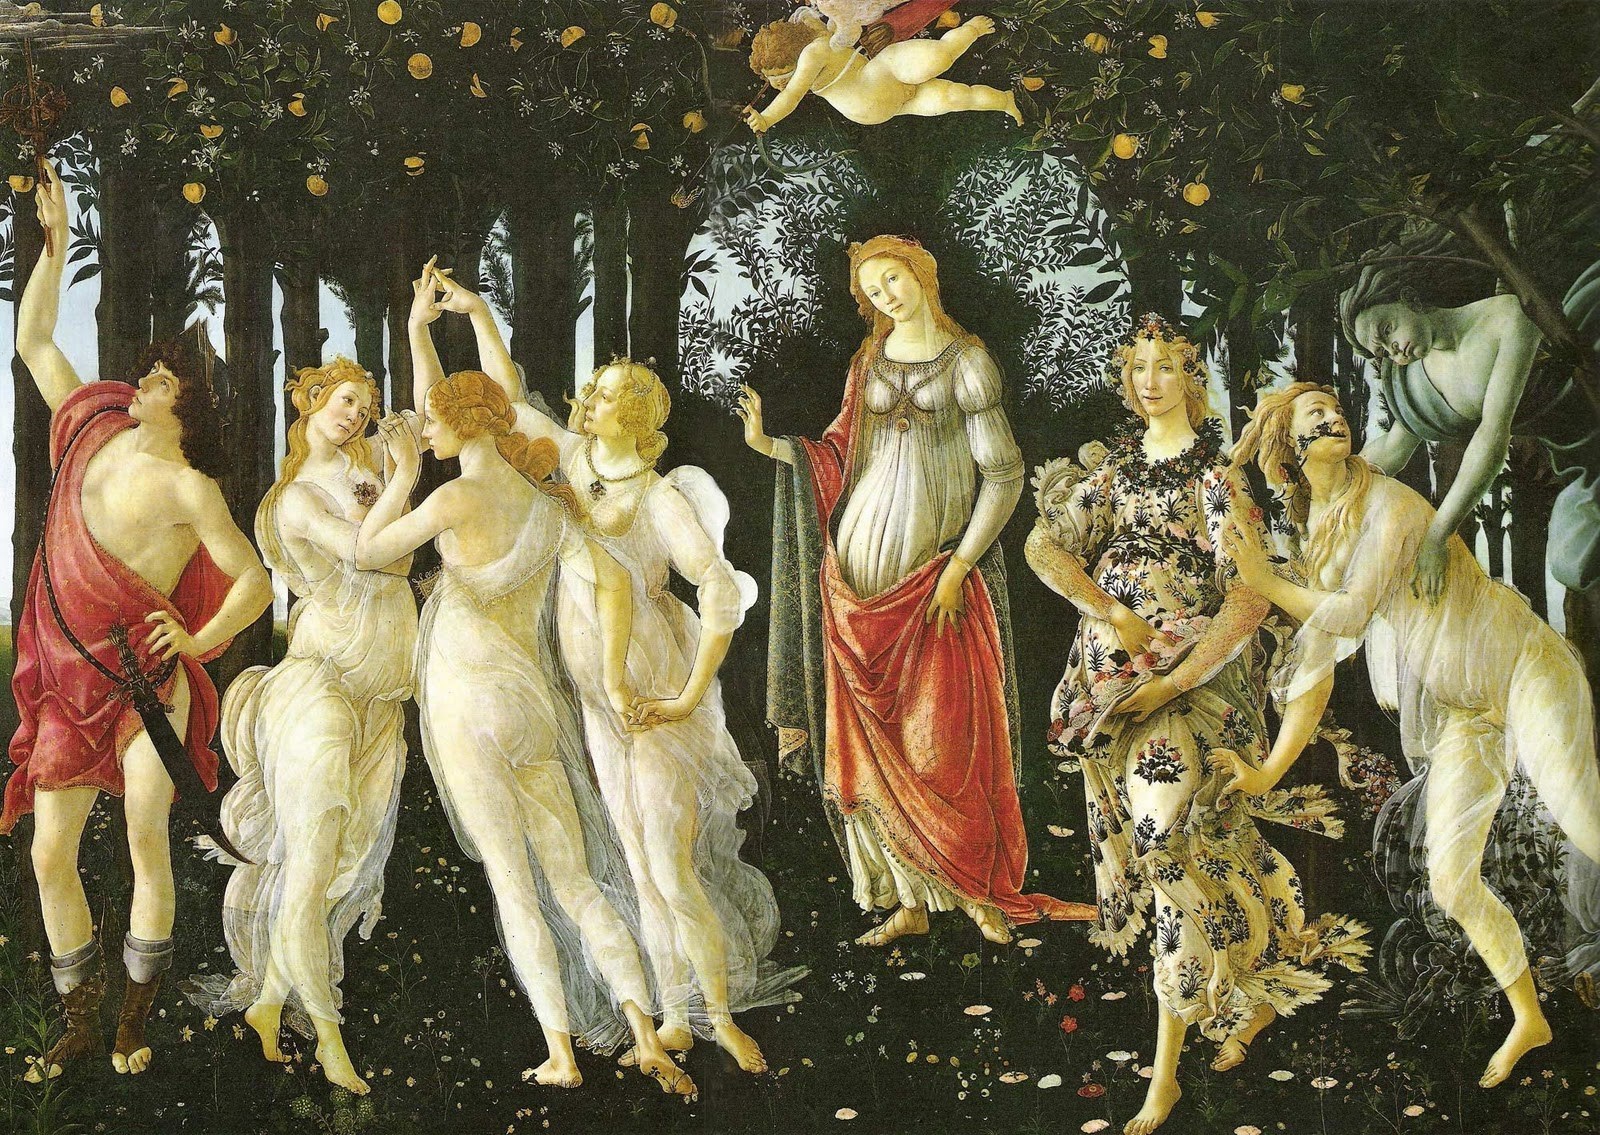  La primavera, de Sandro Botticelli